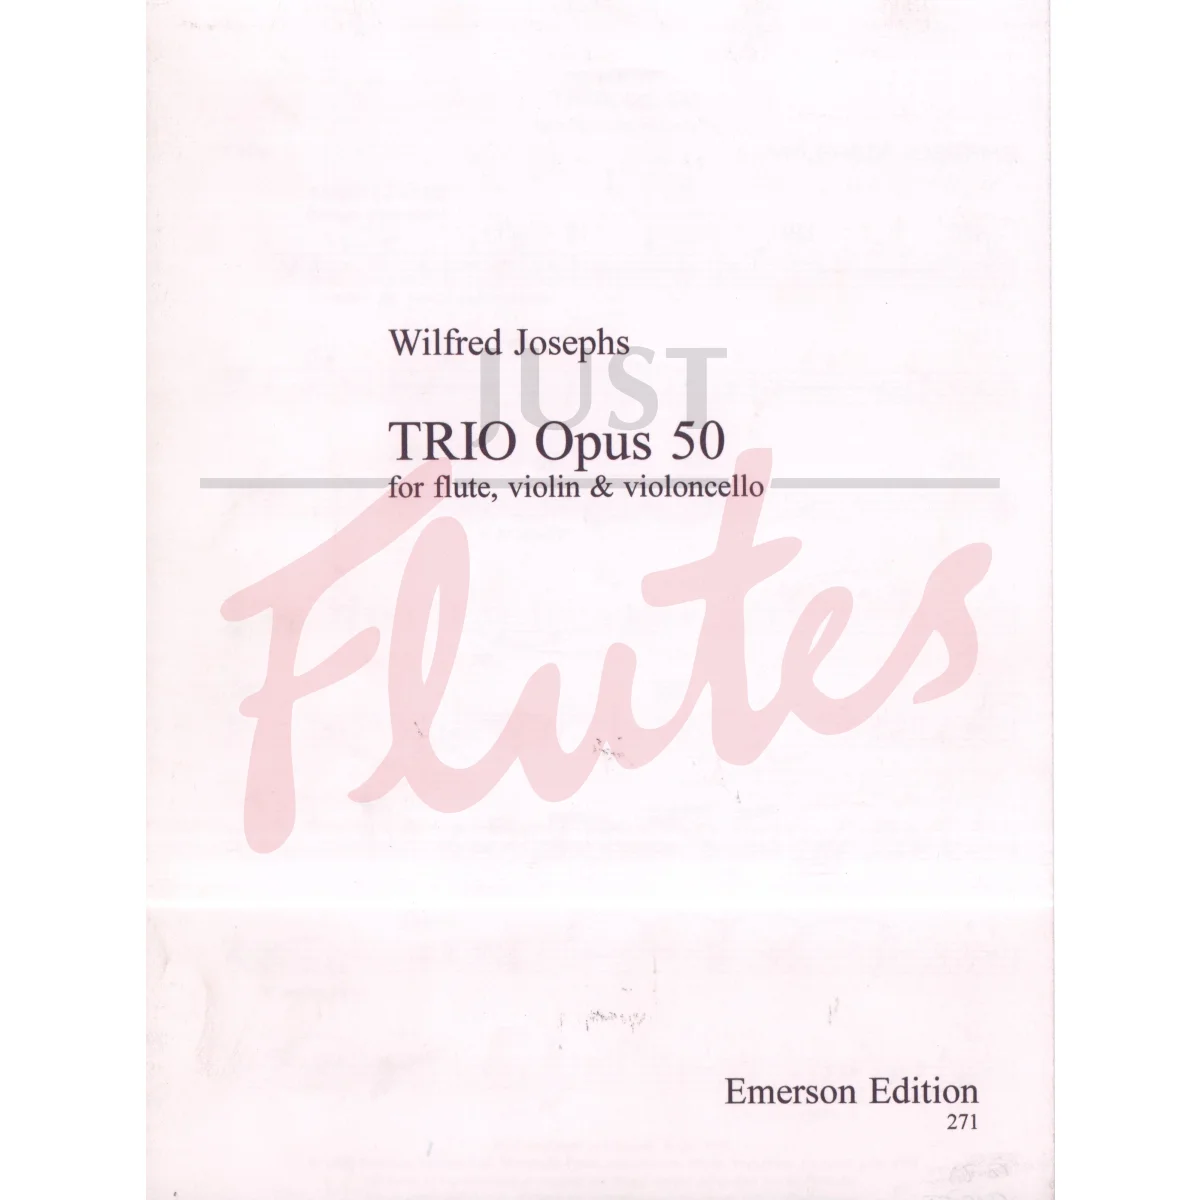 Trio for Flute, Violin and Cello